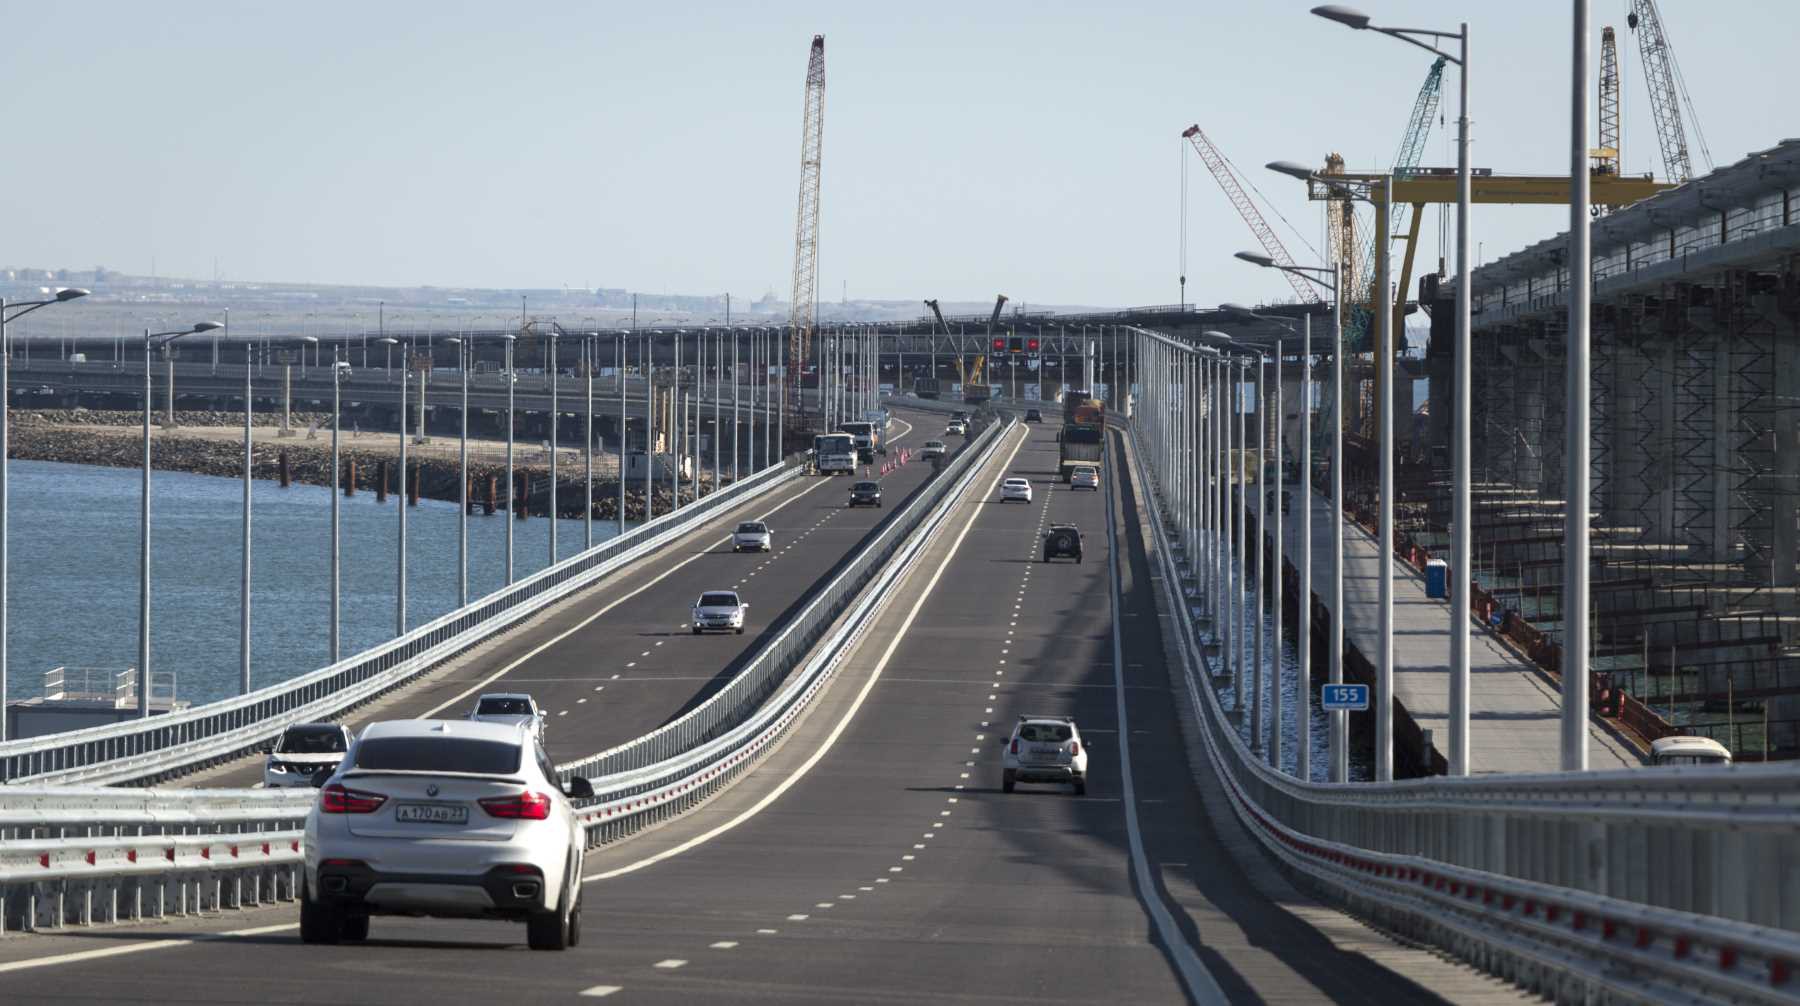 Dailystorm - Крымский мост частично разрушен после возгорания цистерн с топливом, движение остановлено